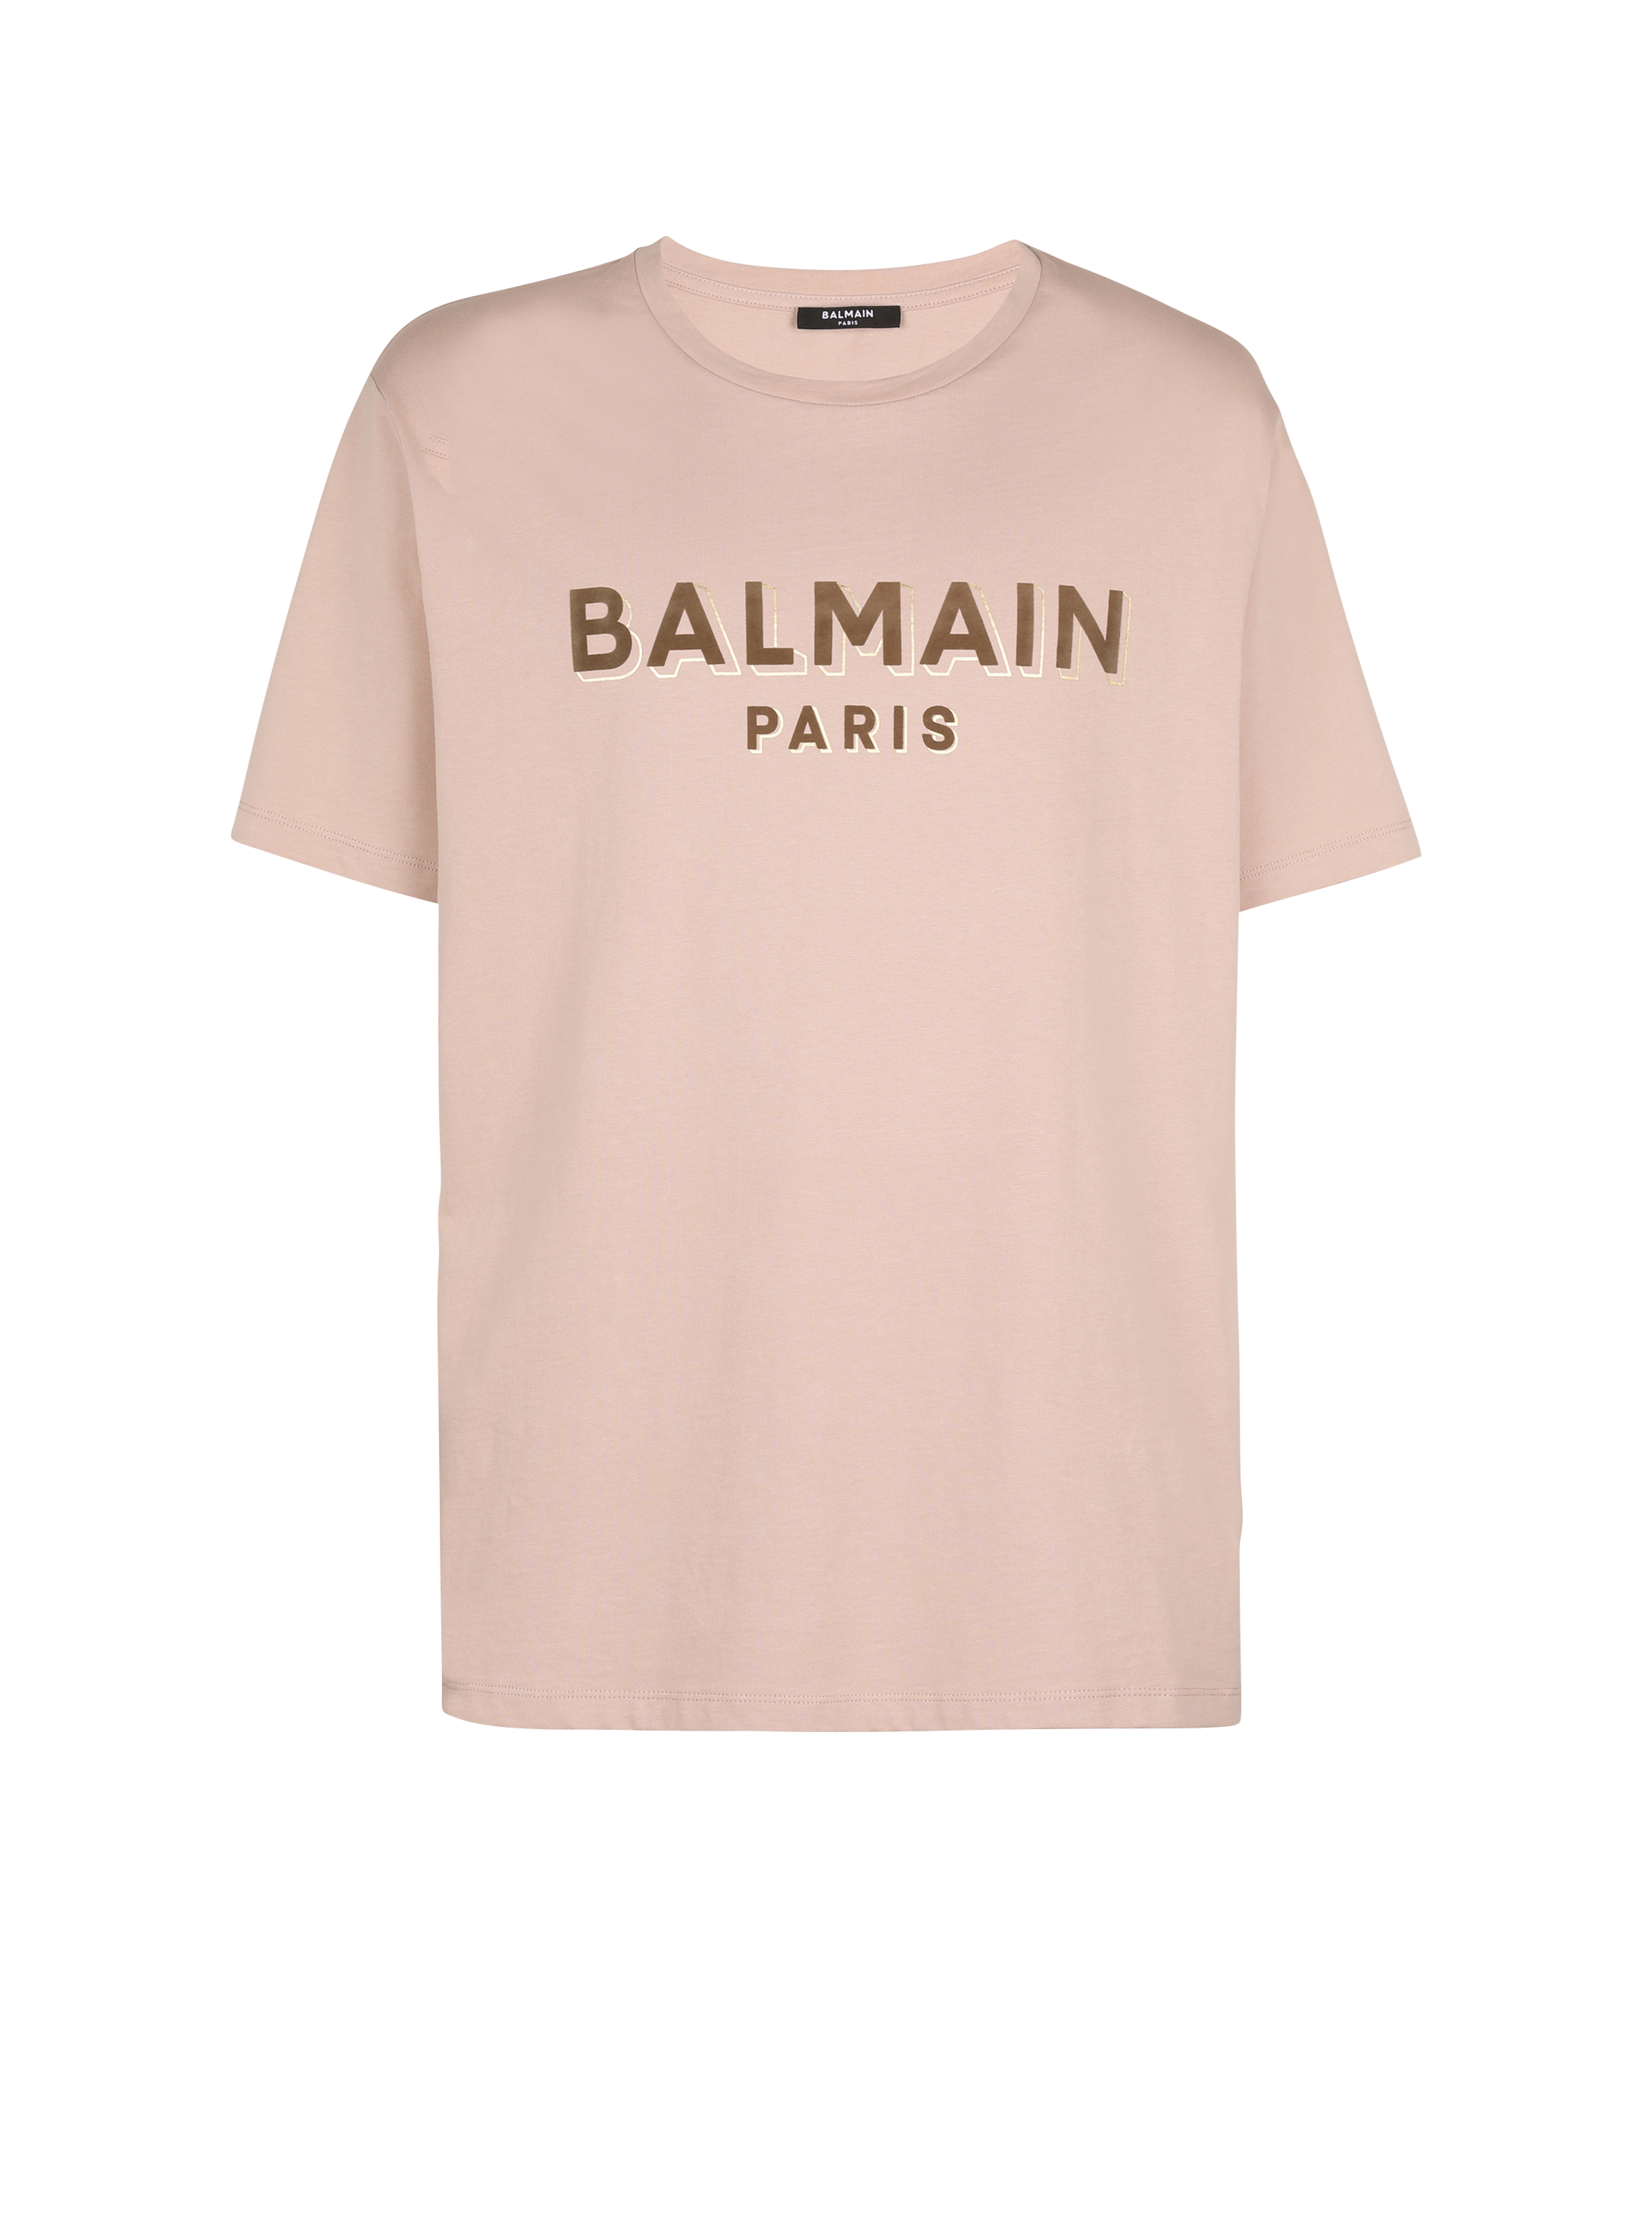 Oversized flocked Balmain logo T-shirt, brown, hi-res